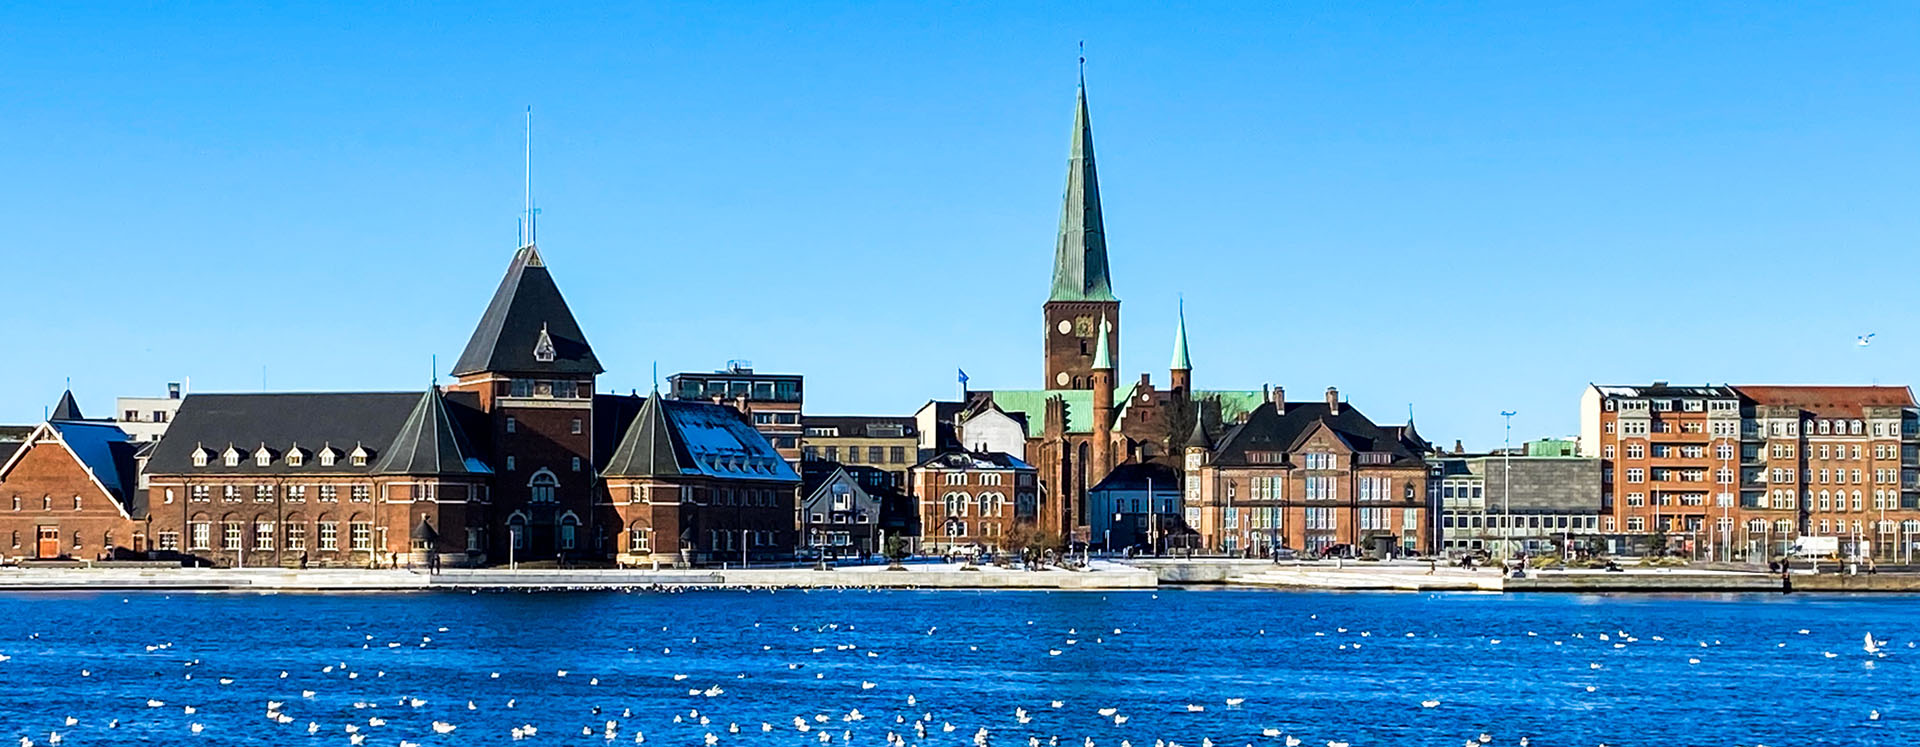 Århus havnekaj